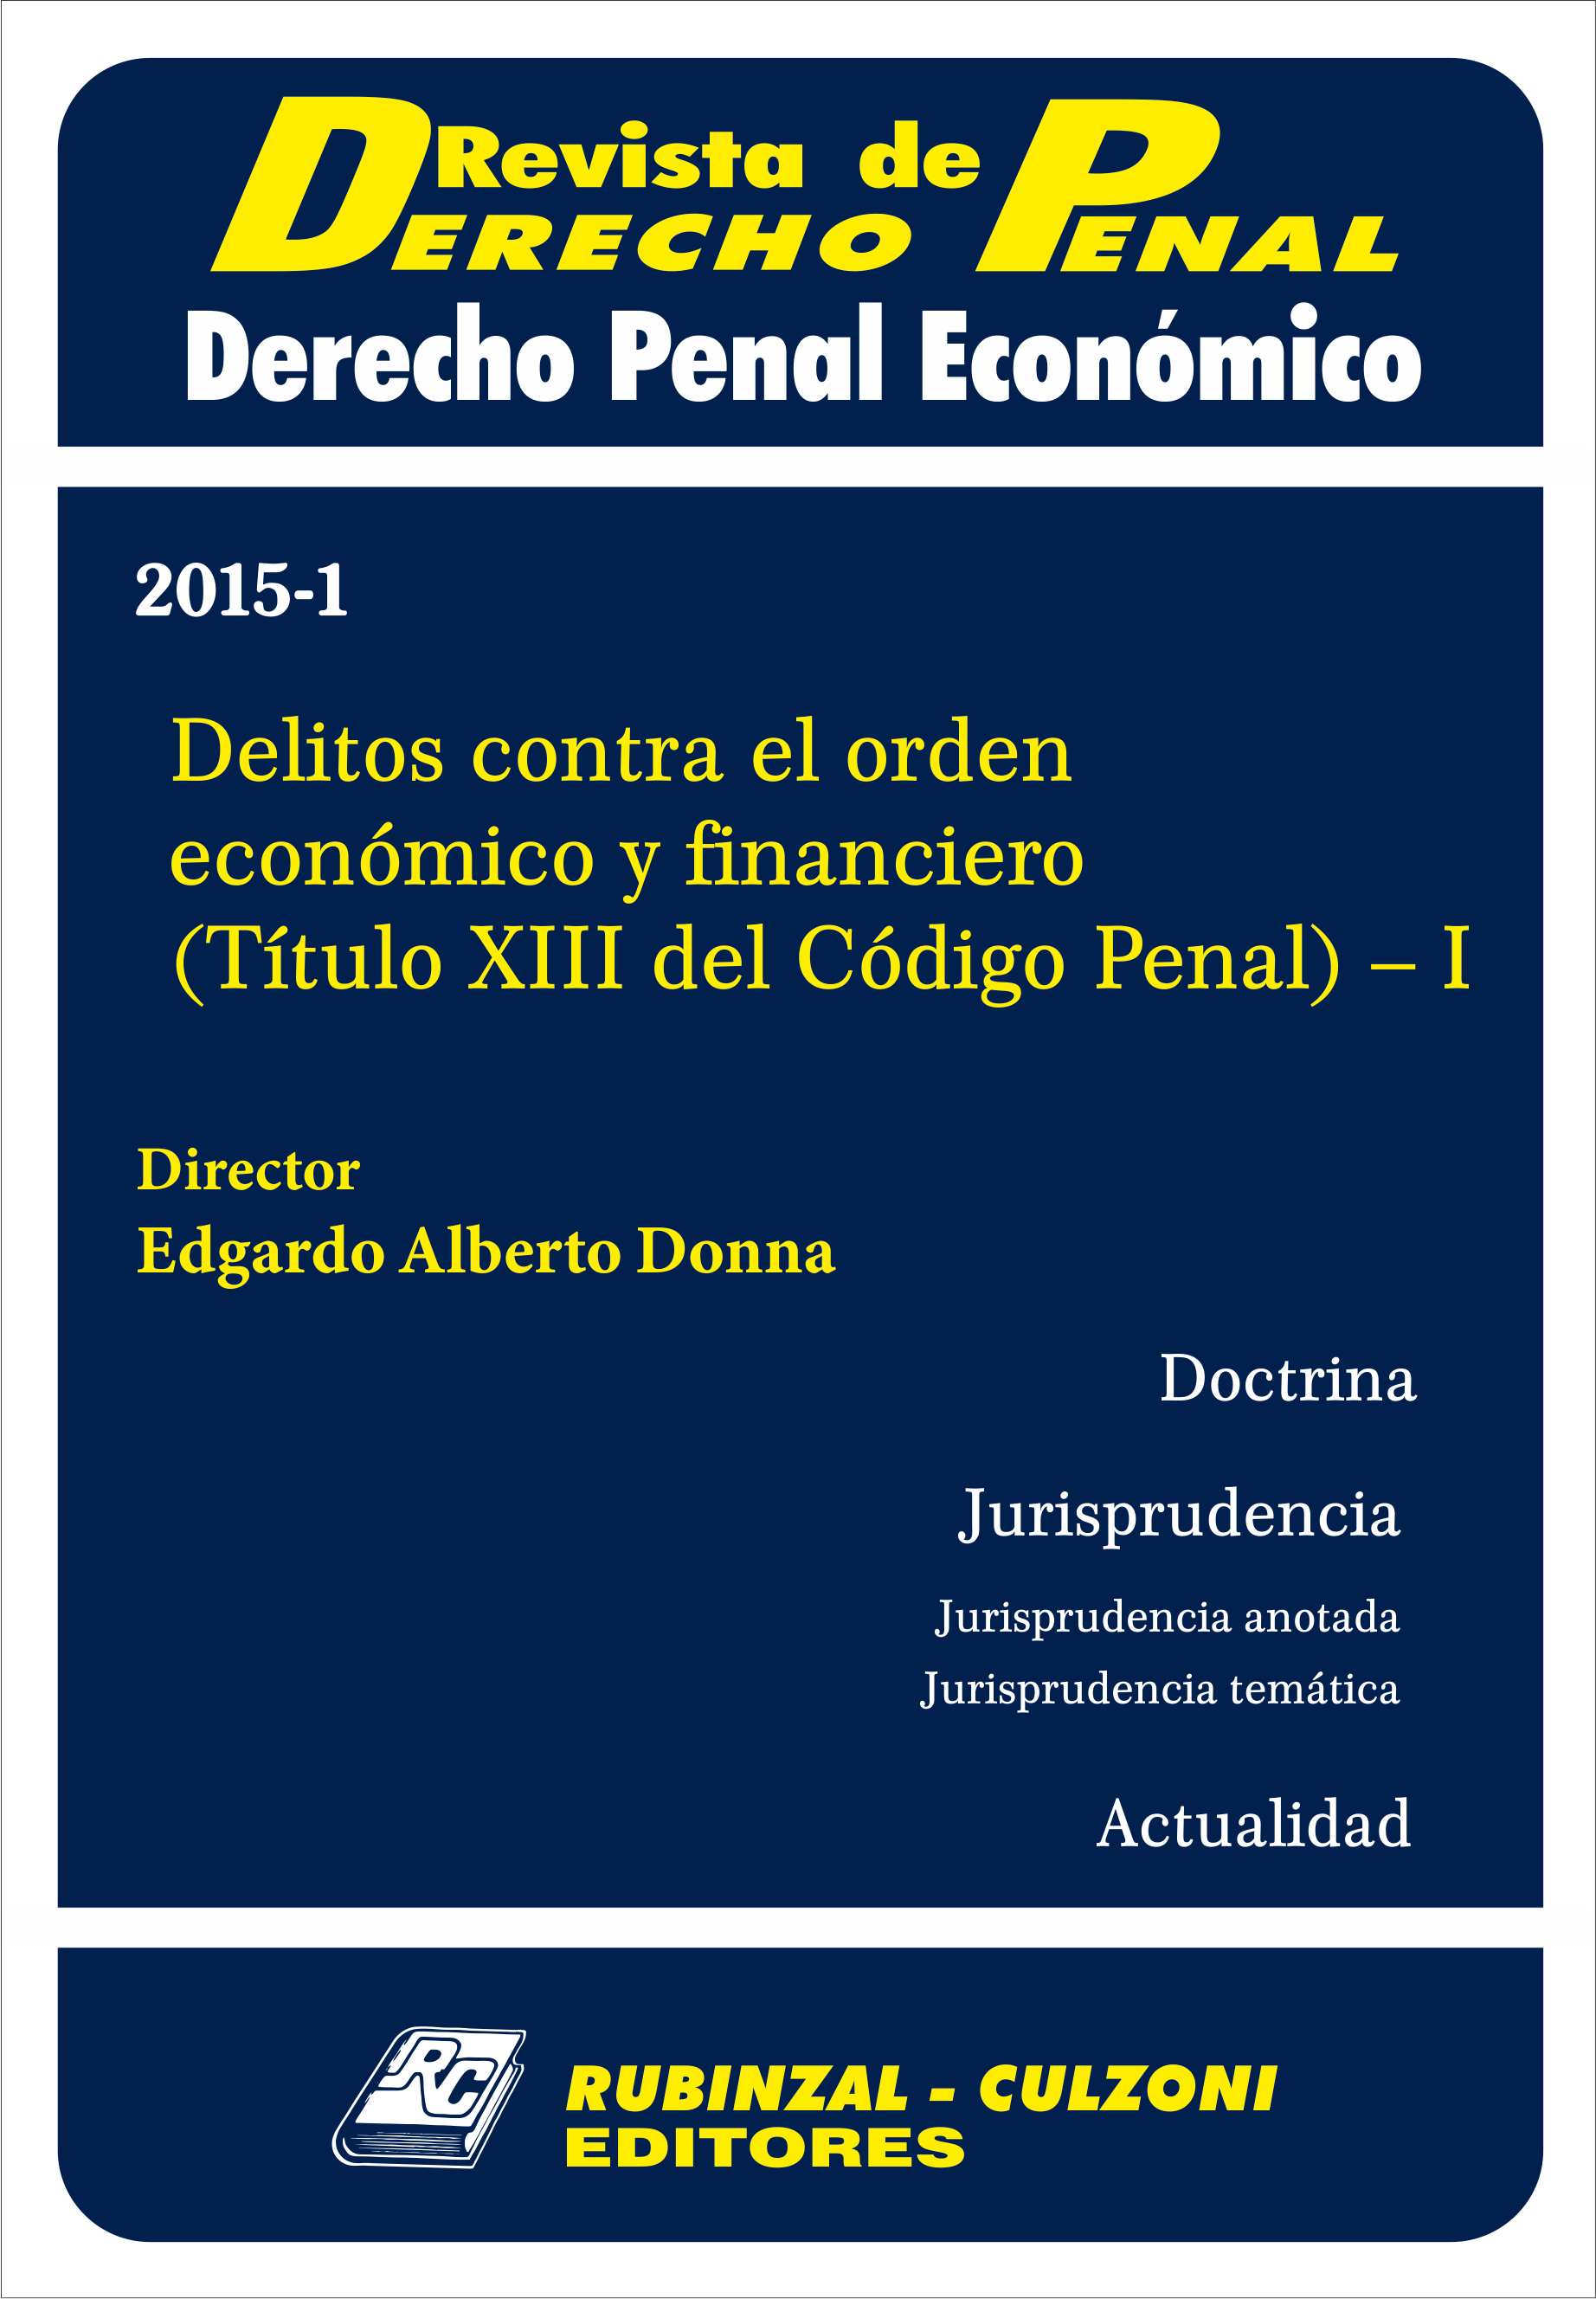 Revista de Derecho Penal Económico - Delitos contra el orden económico y financiero (Título XIII del Código Penal) - I